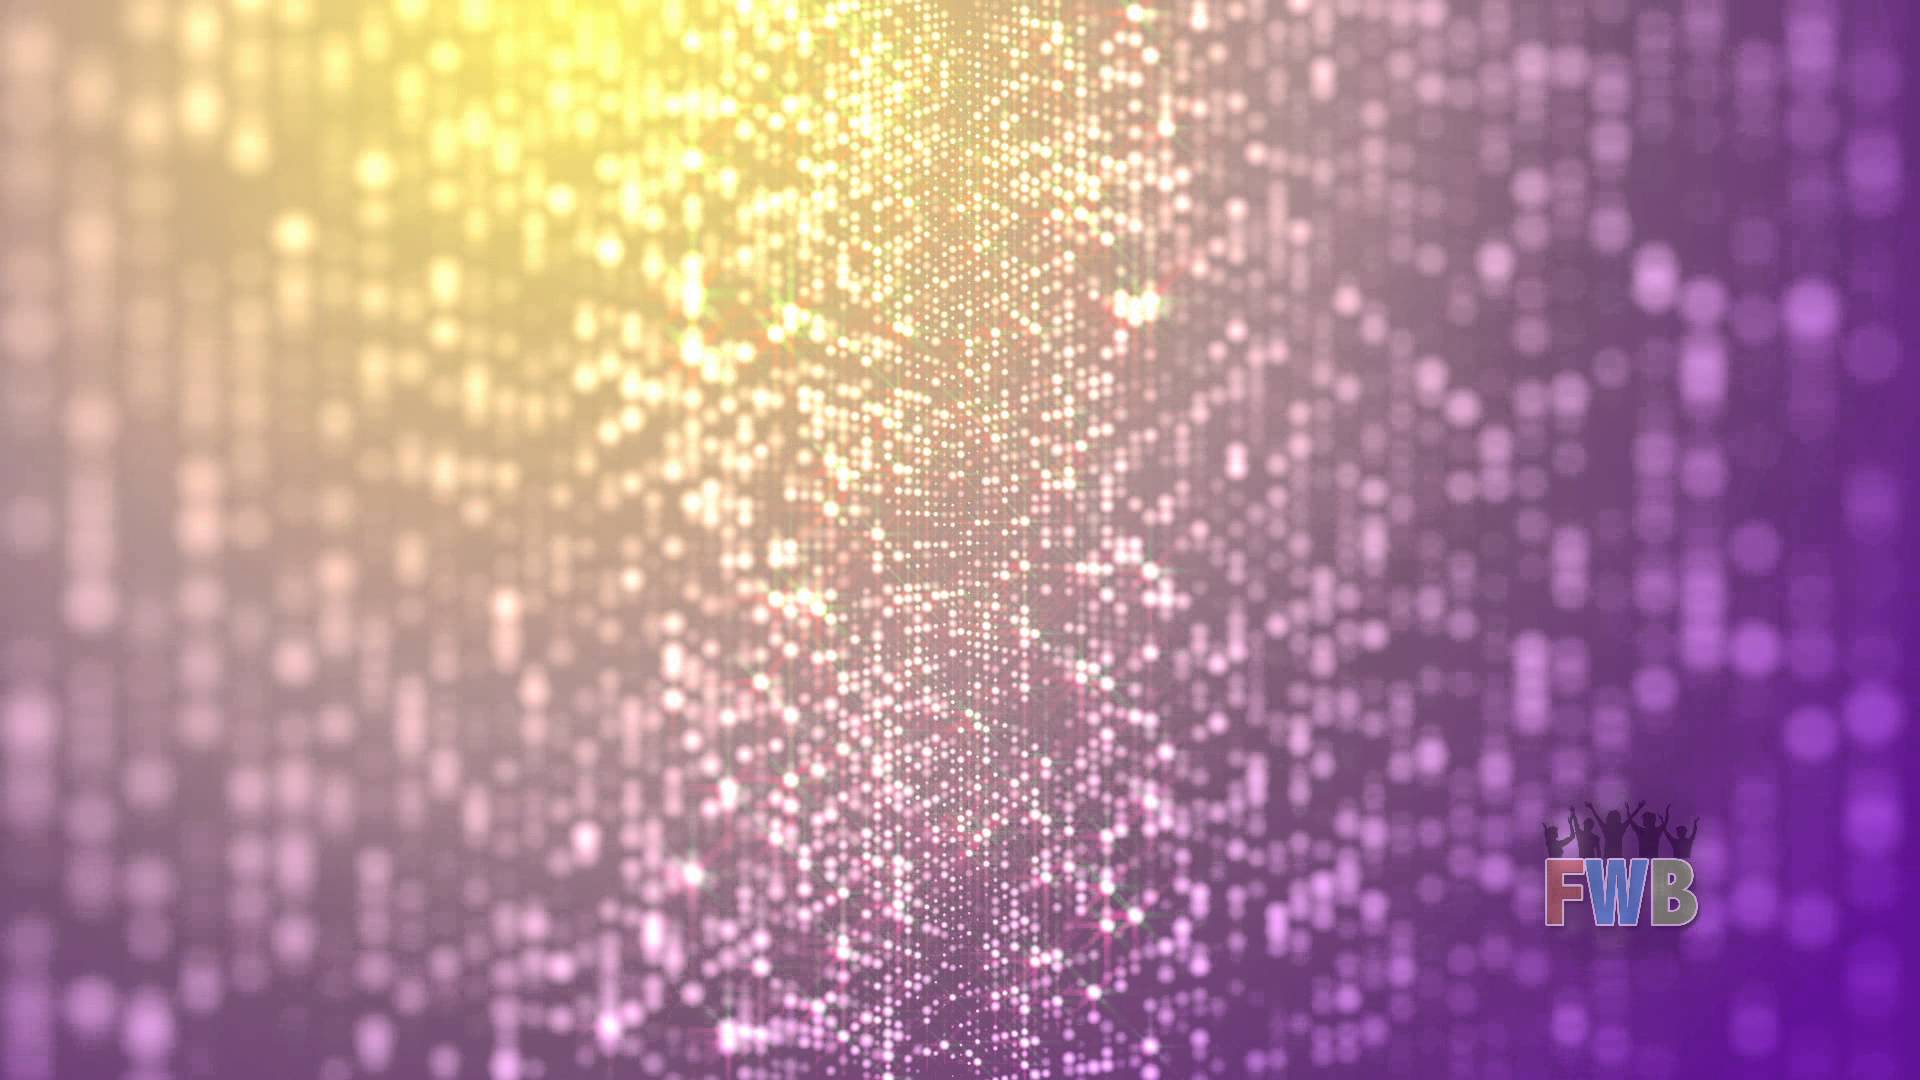 Raining Glitter Background - wallpaper